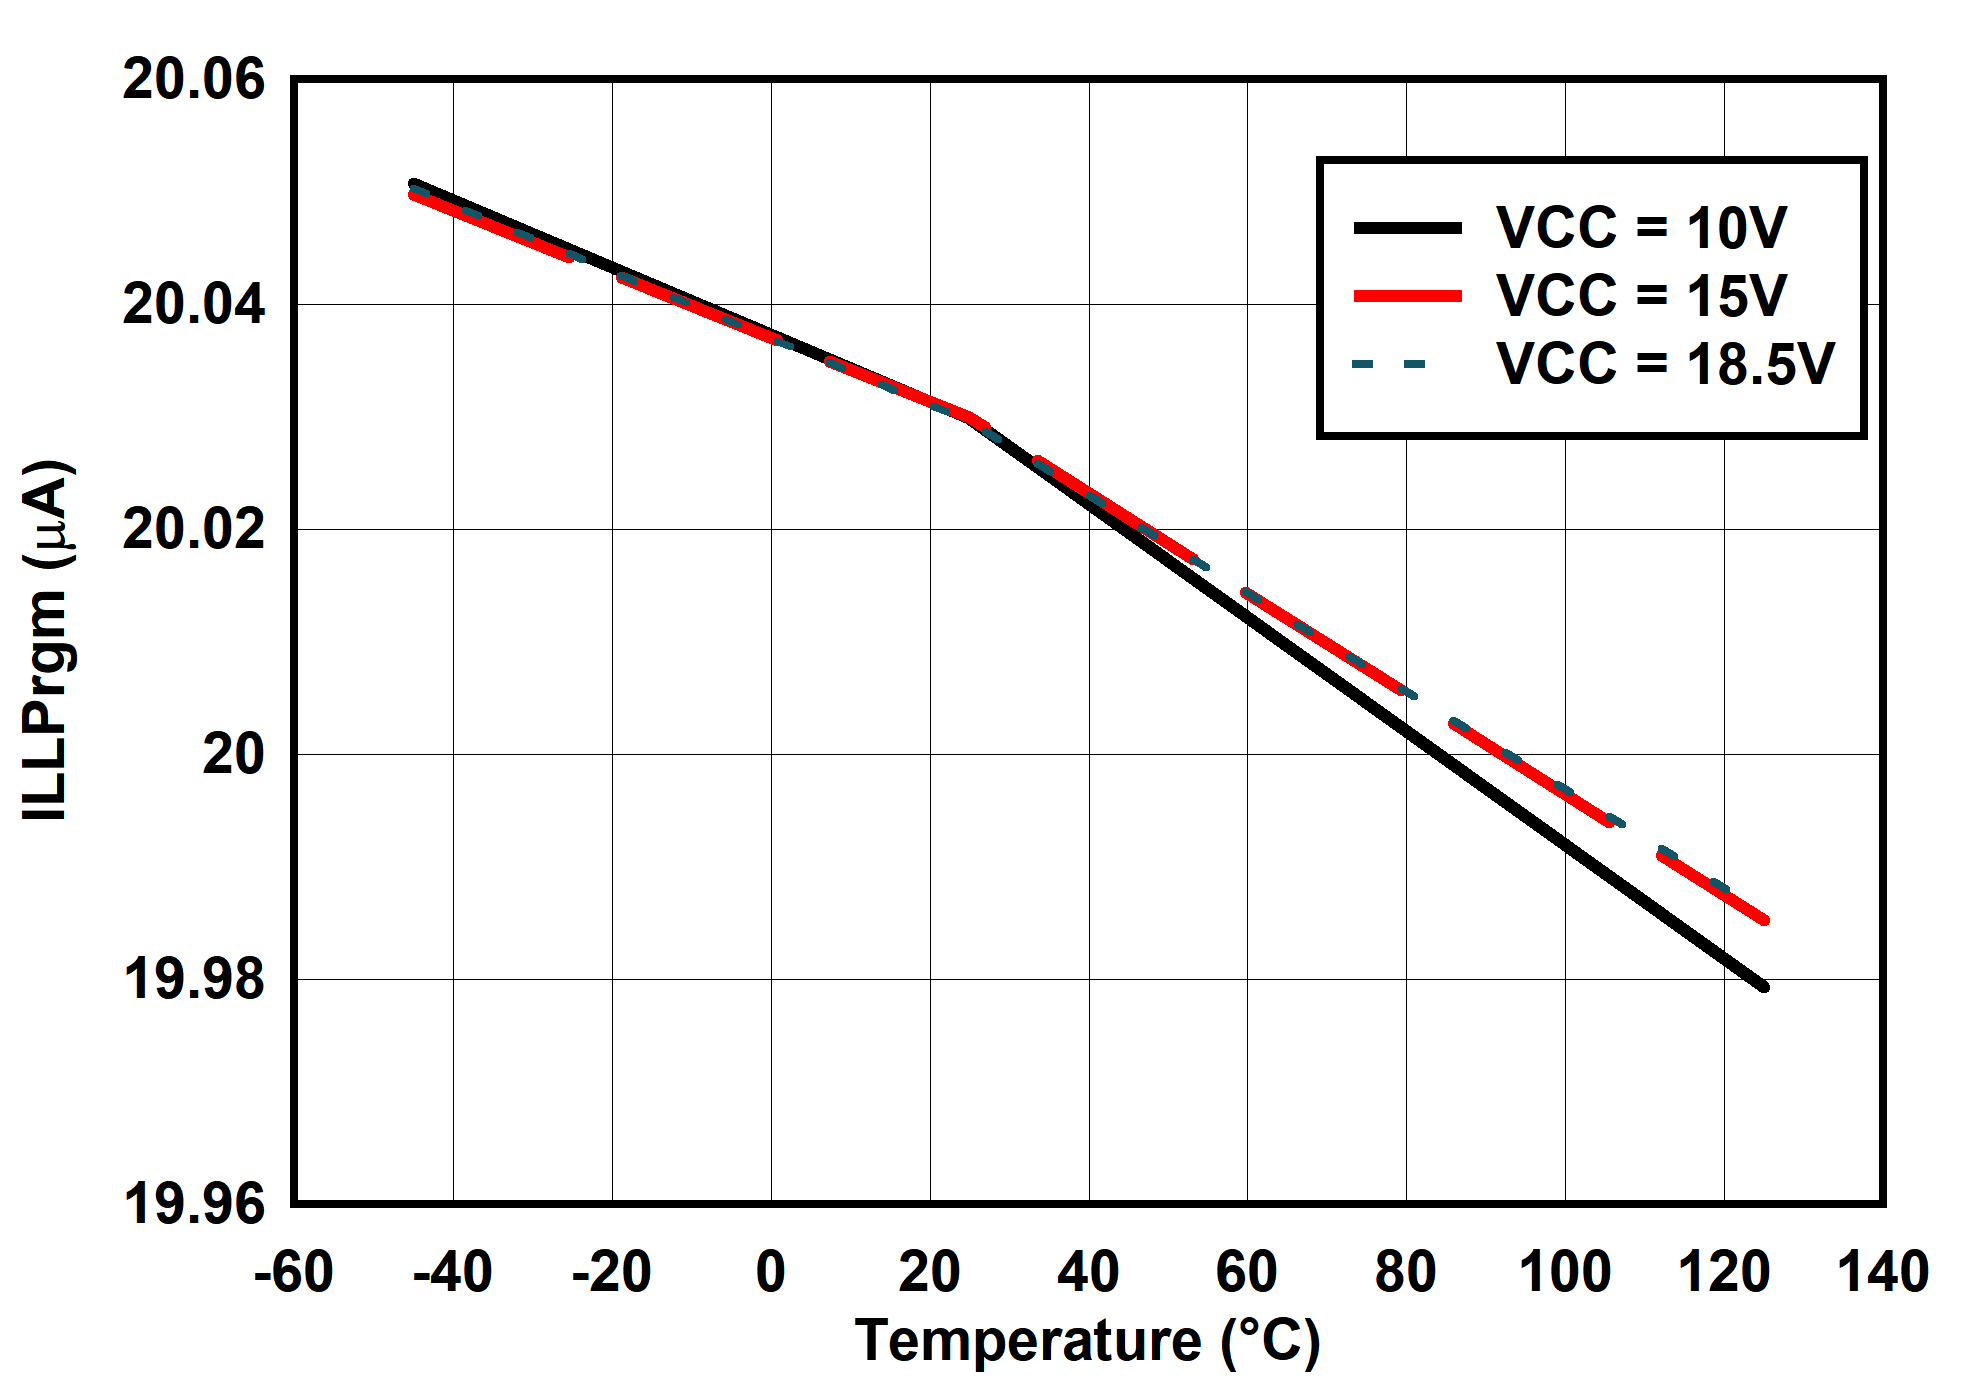 UCC25660 ILLPrgm vs Temperature